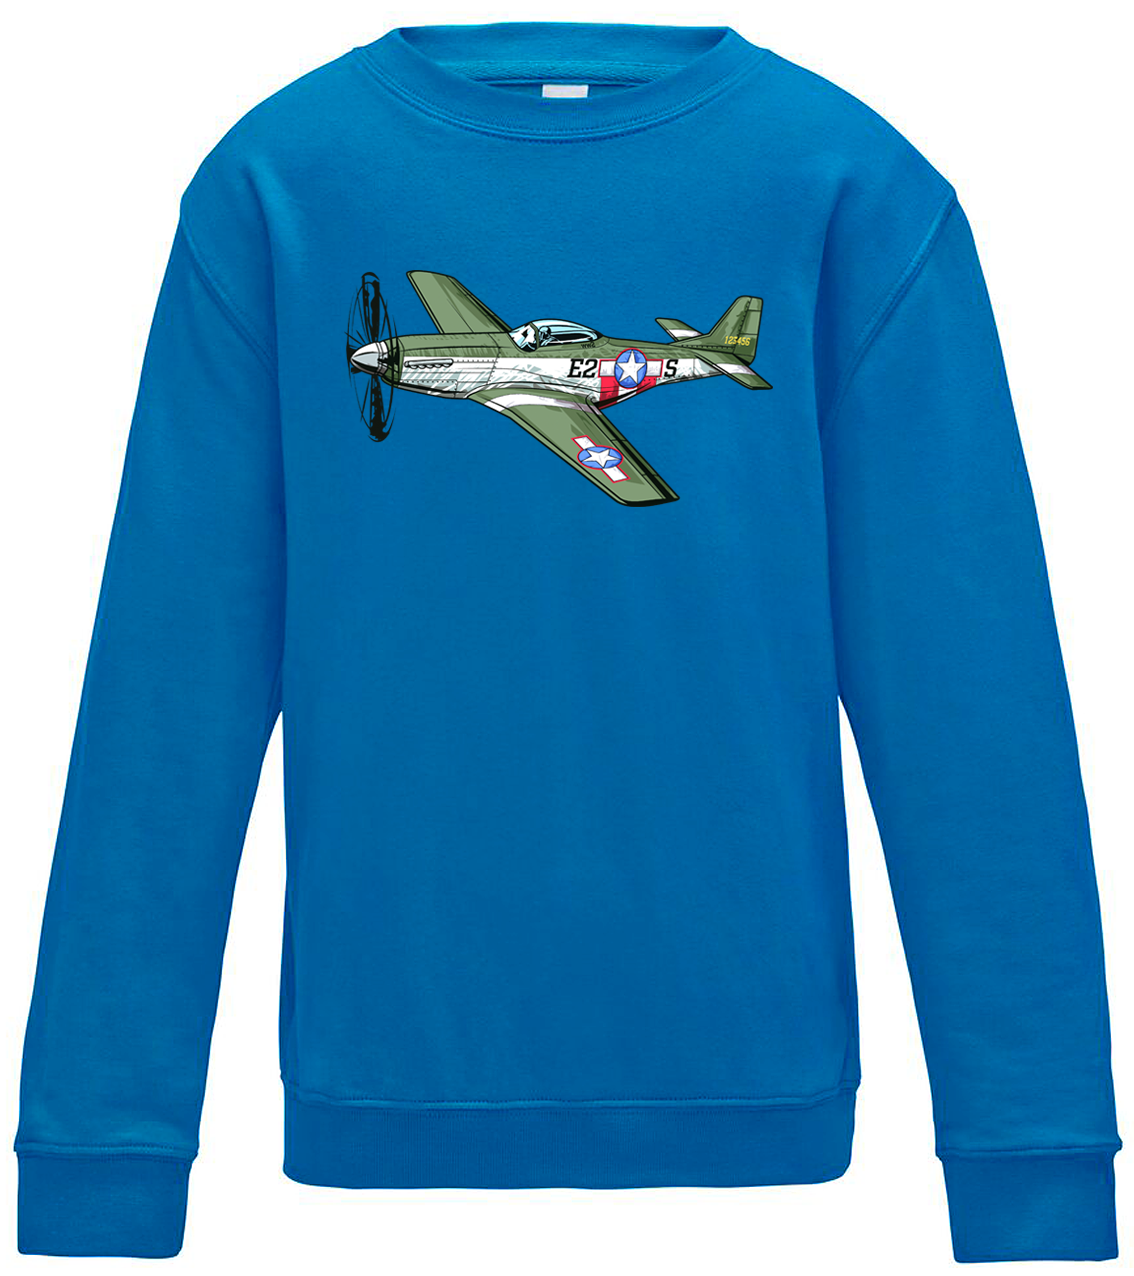 Dětská mikina s letadlem - P-51 Mustang Velikost: 12/14 (152/164), Barva: Modrá